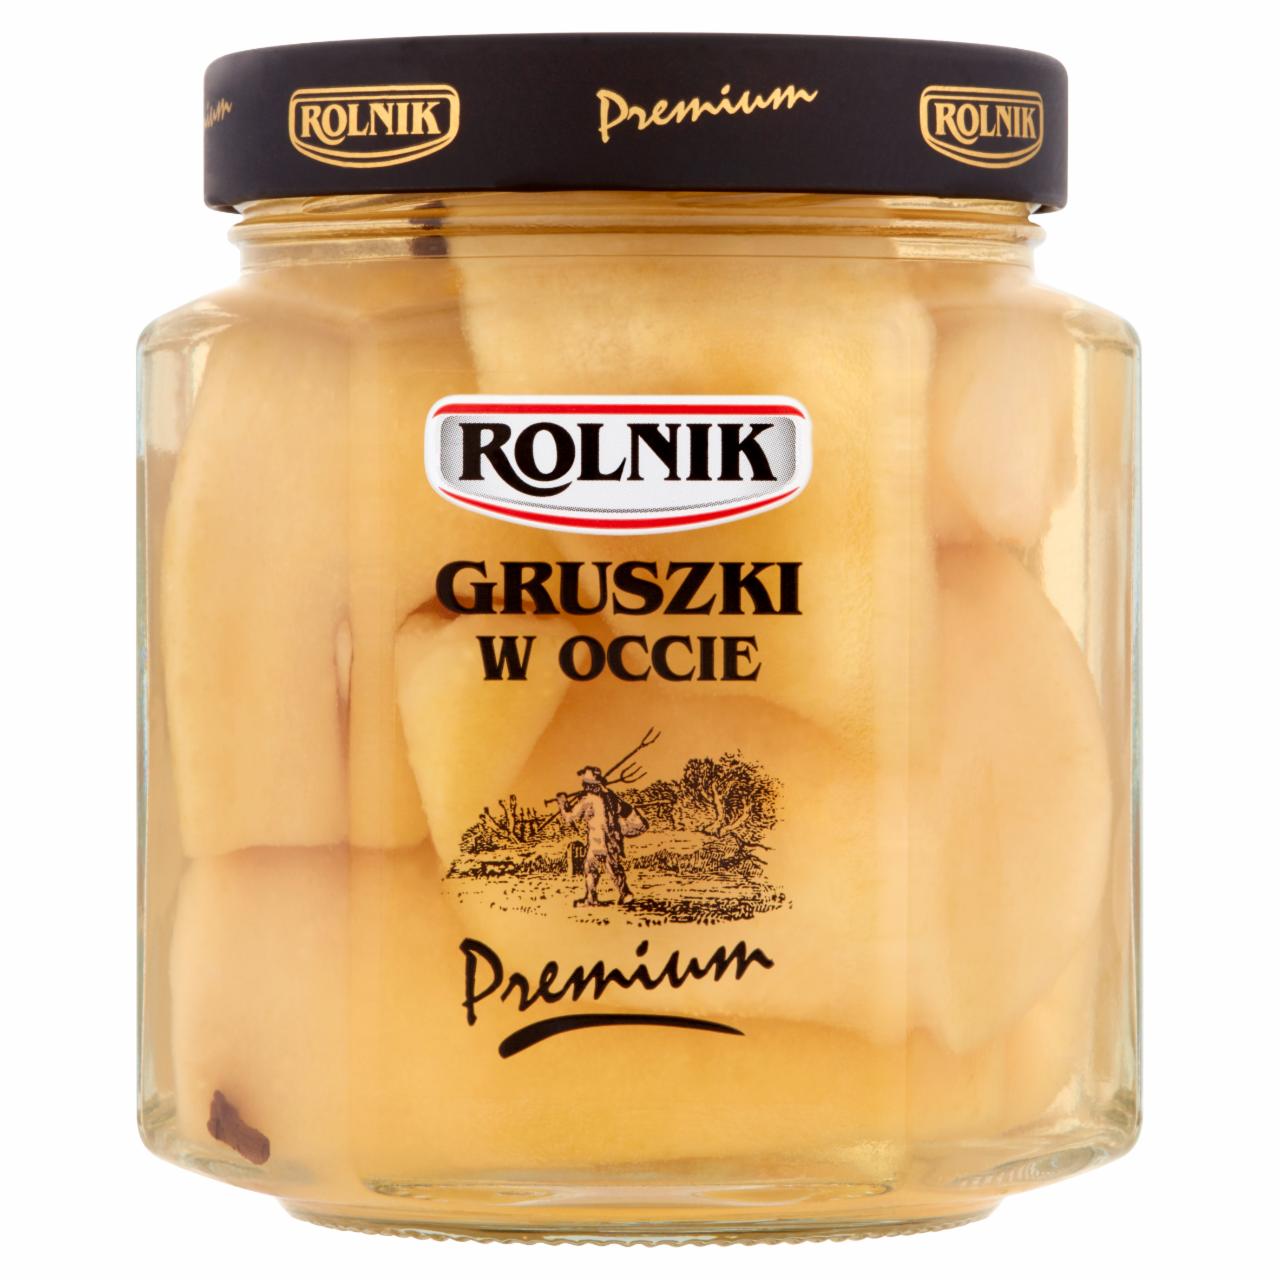 Photo - Rolnik Premium Pears in Vinegar 530 g